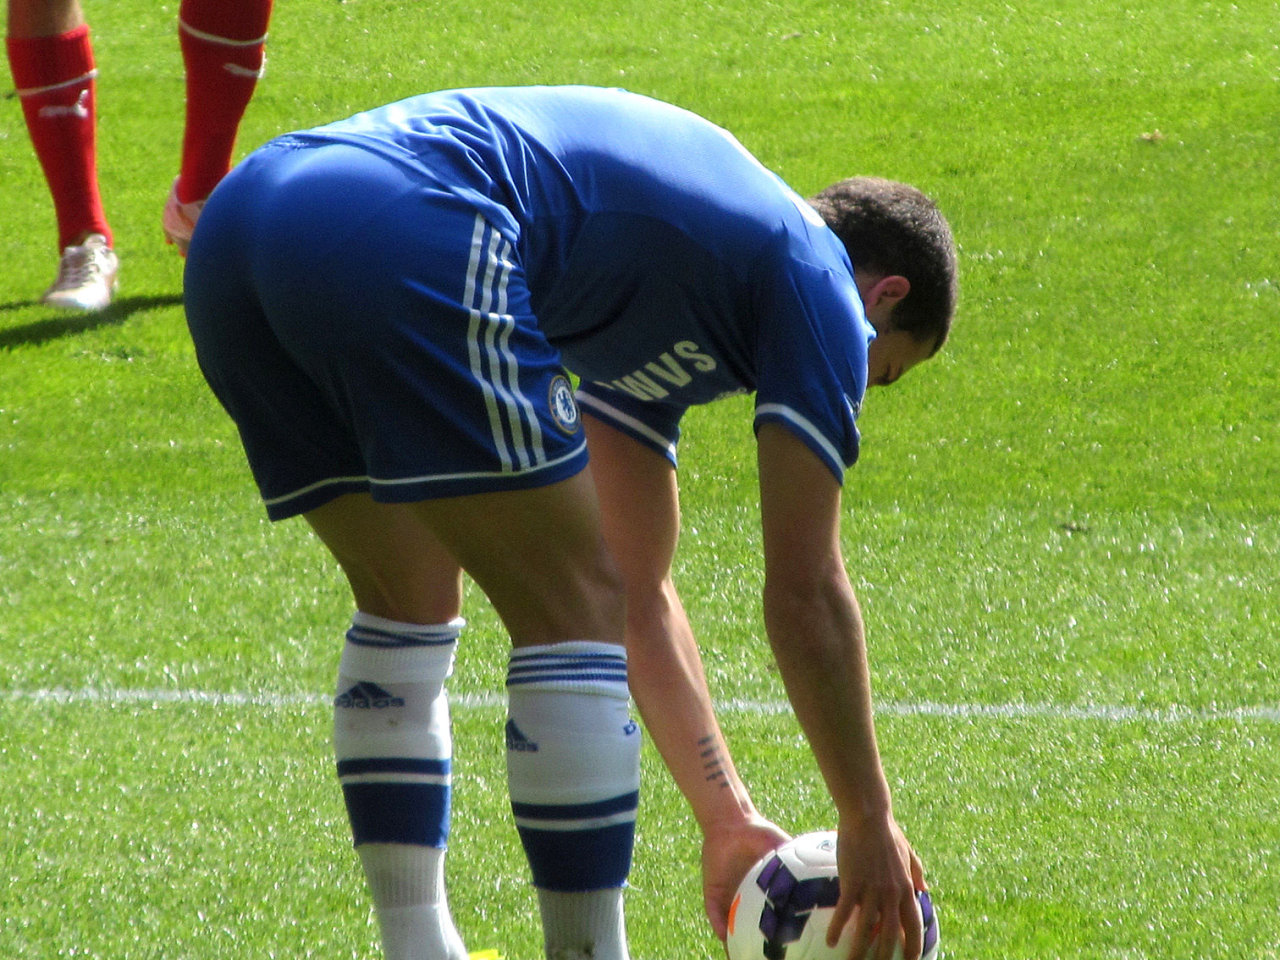 Eden HazardBelgian footballer